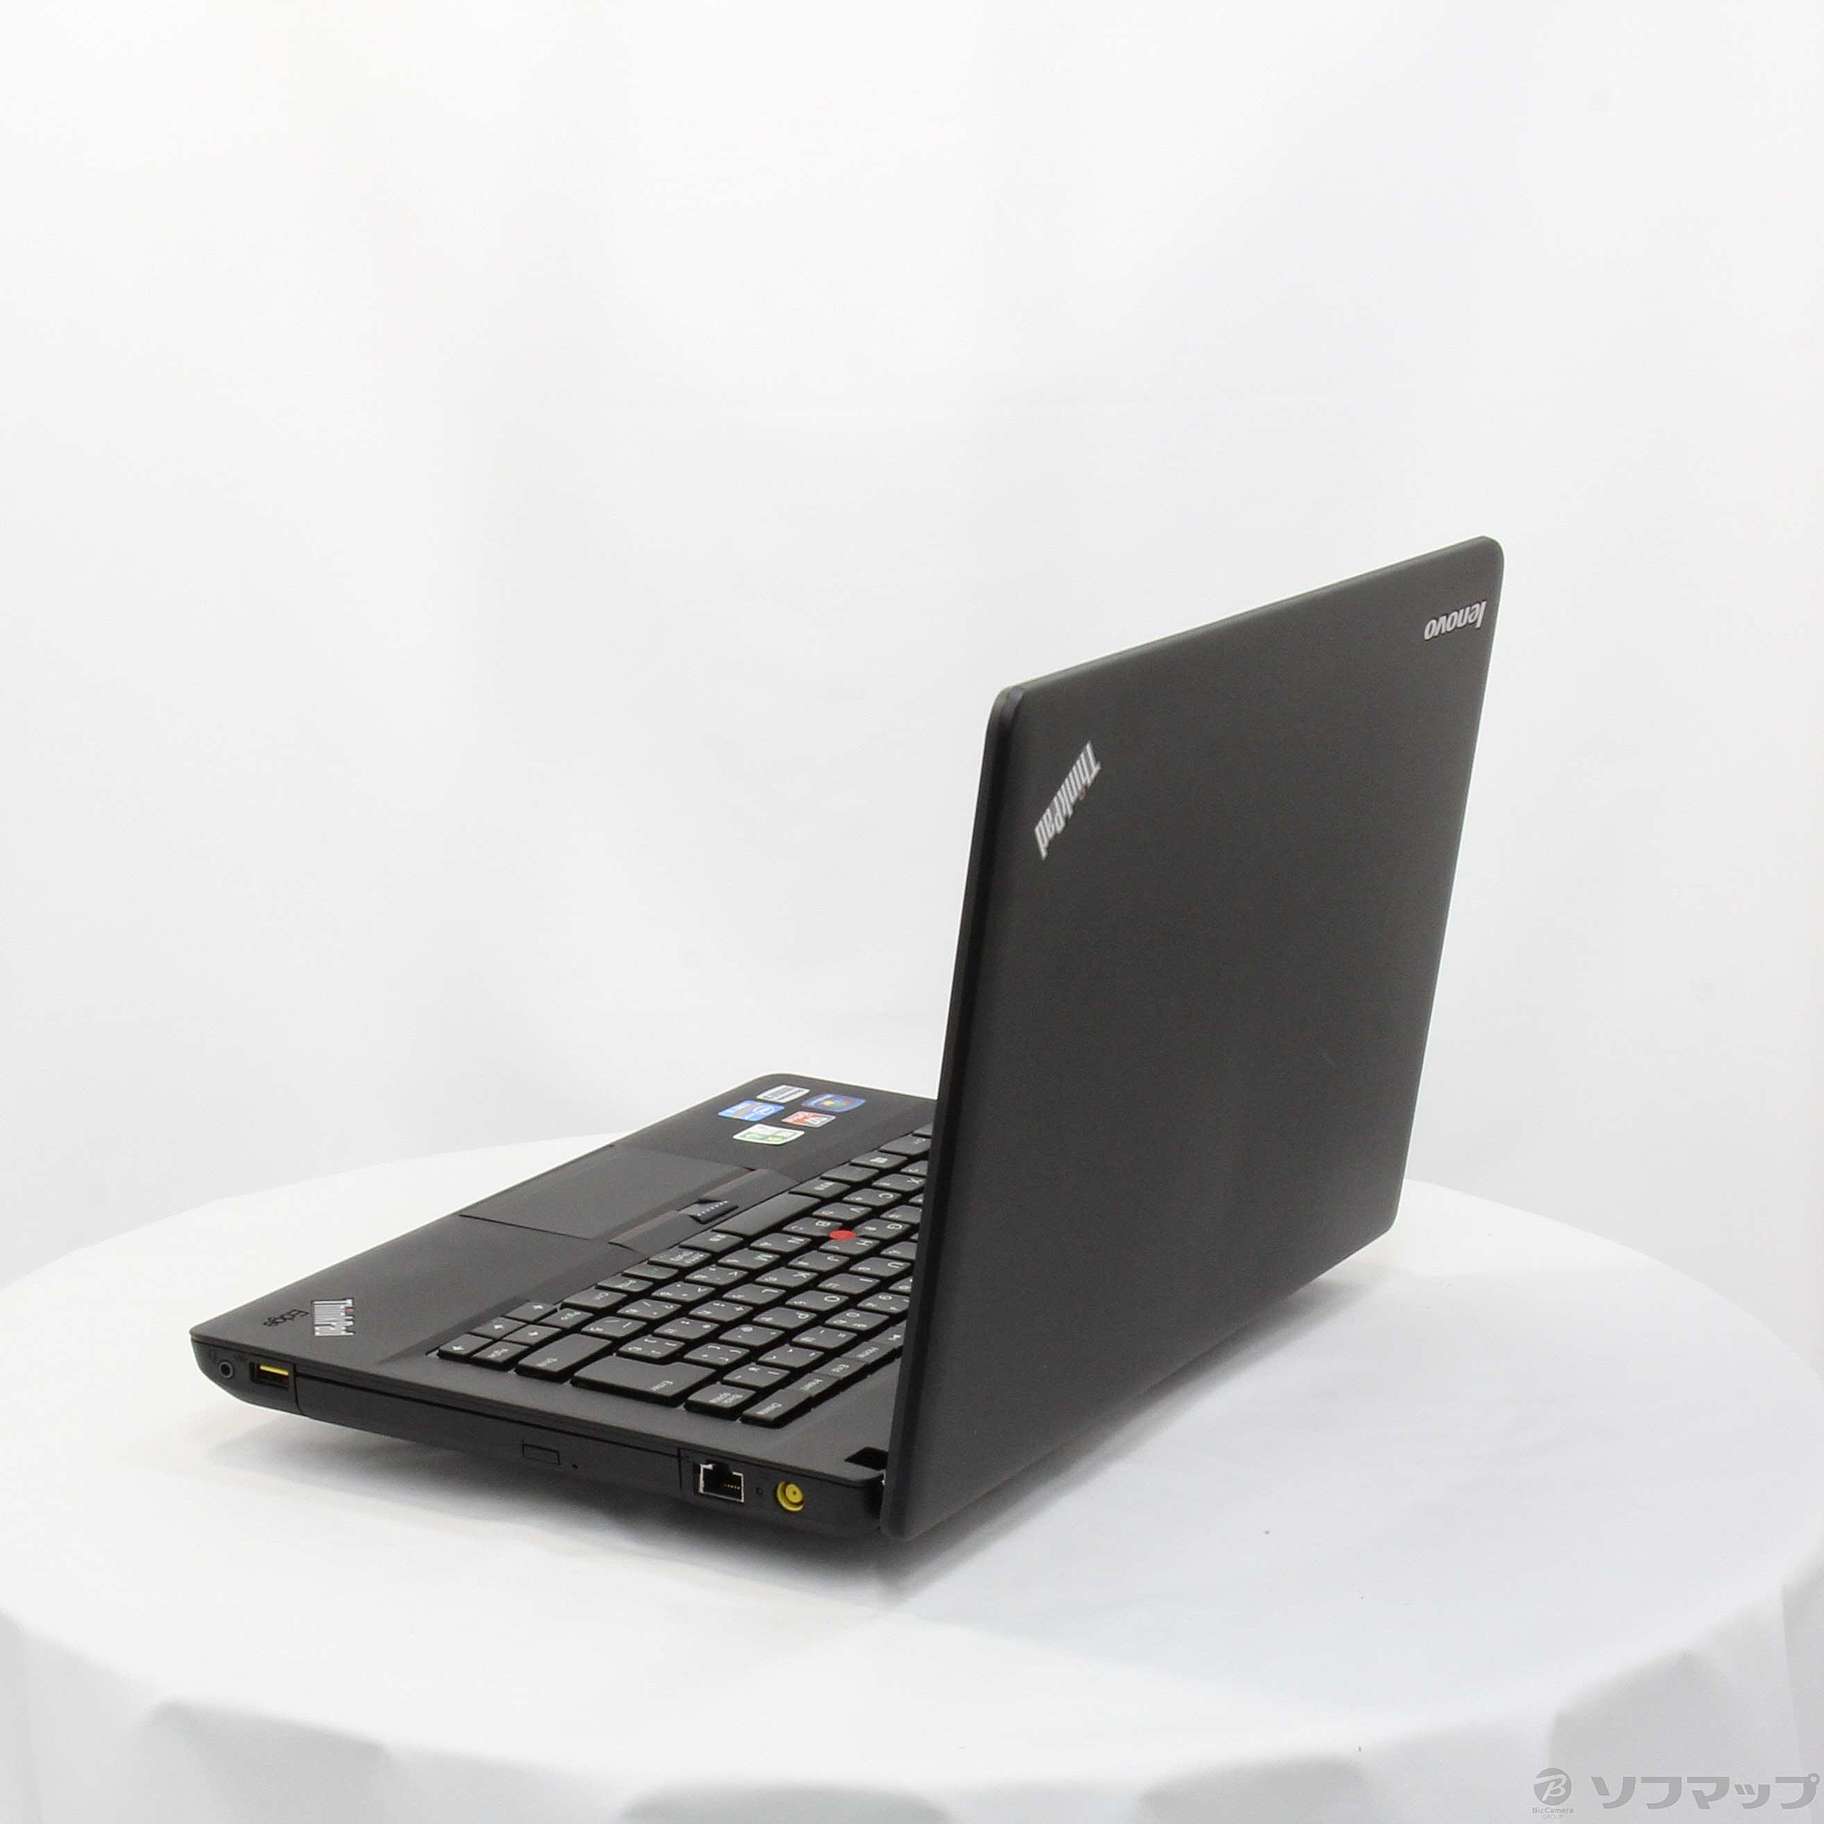 セール対象品 格安安心パソコン ThinkPad Edge E430c 33651F9 ※バッテリー完全消耗